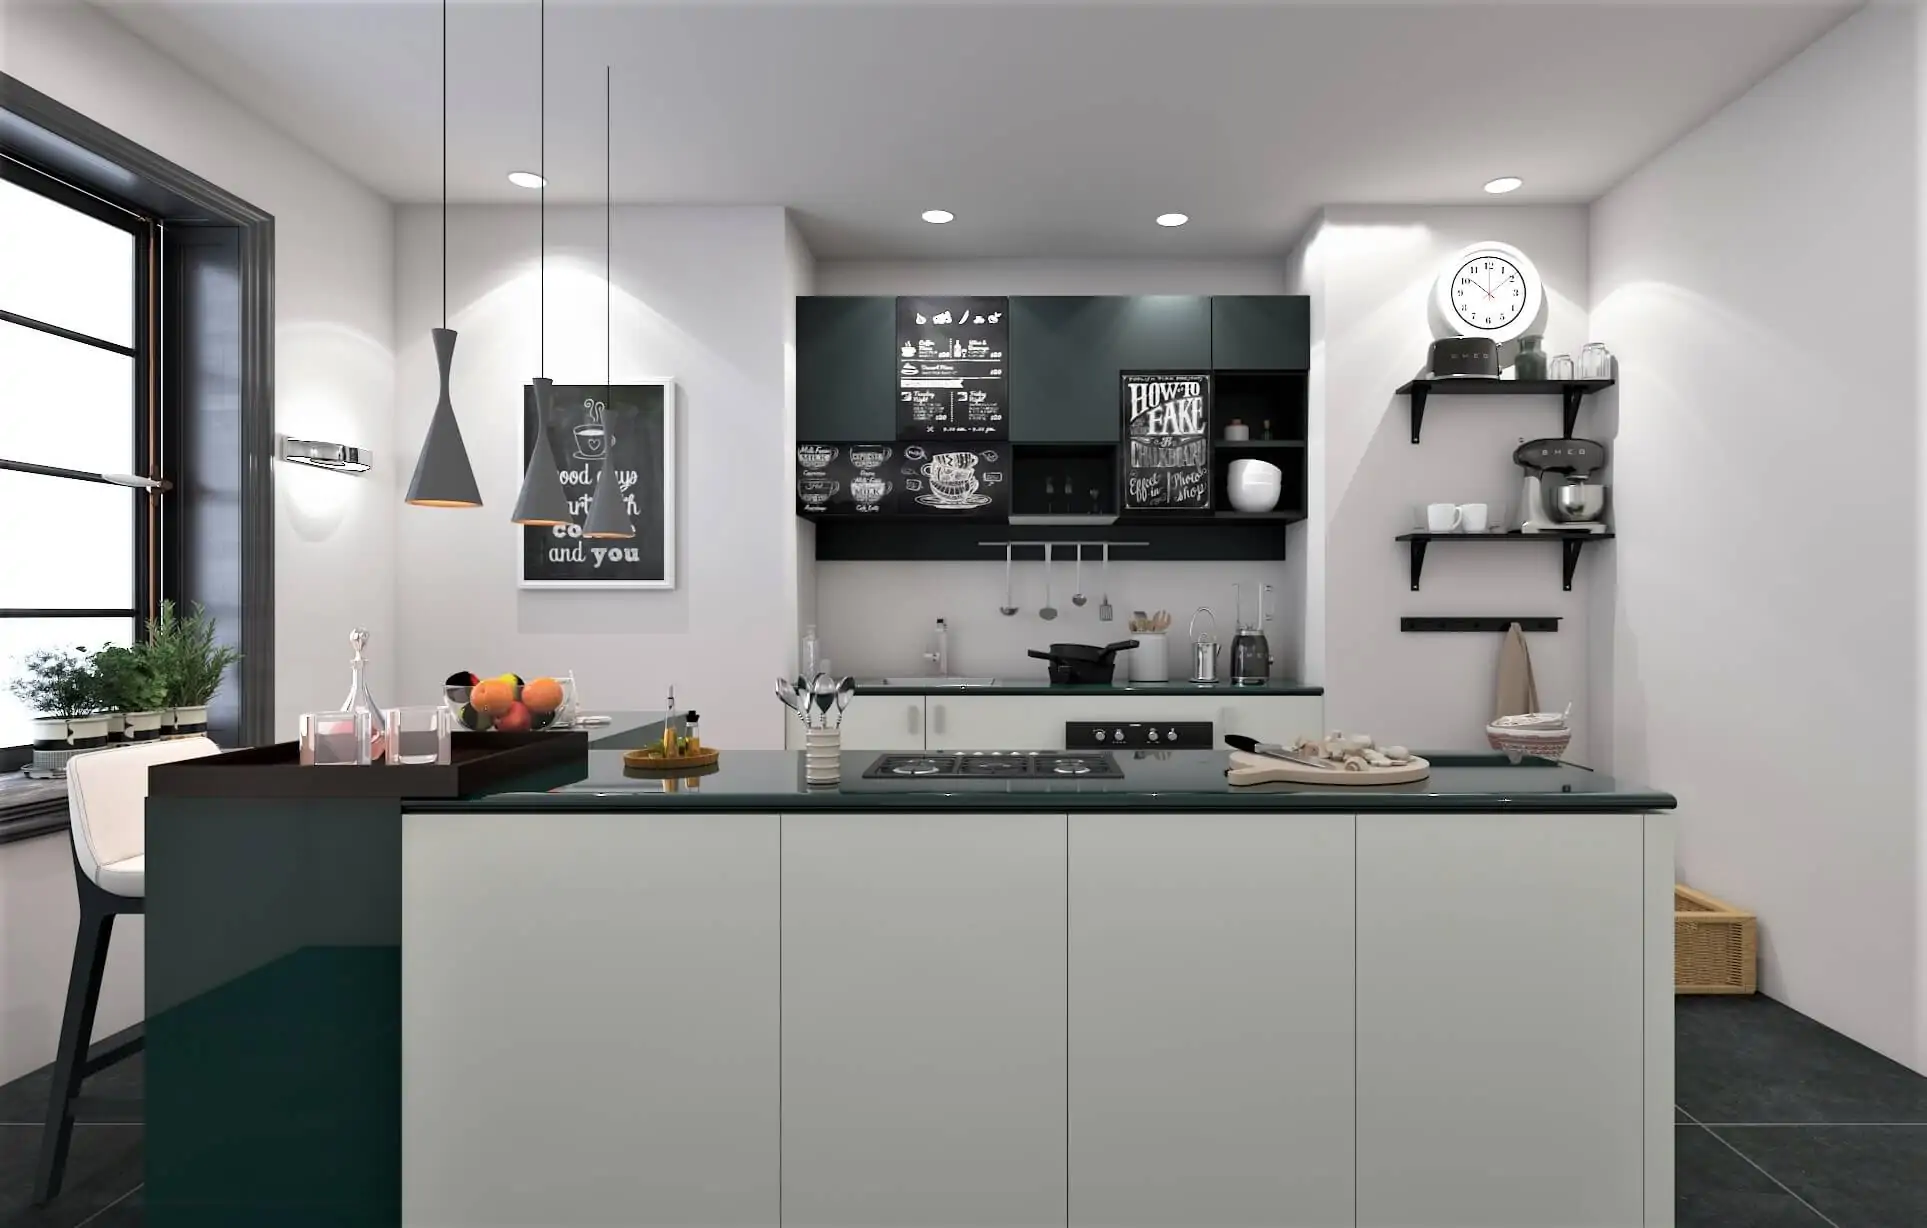 8 Design Ideas to Modernize Your Kitchen